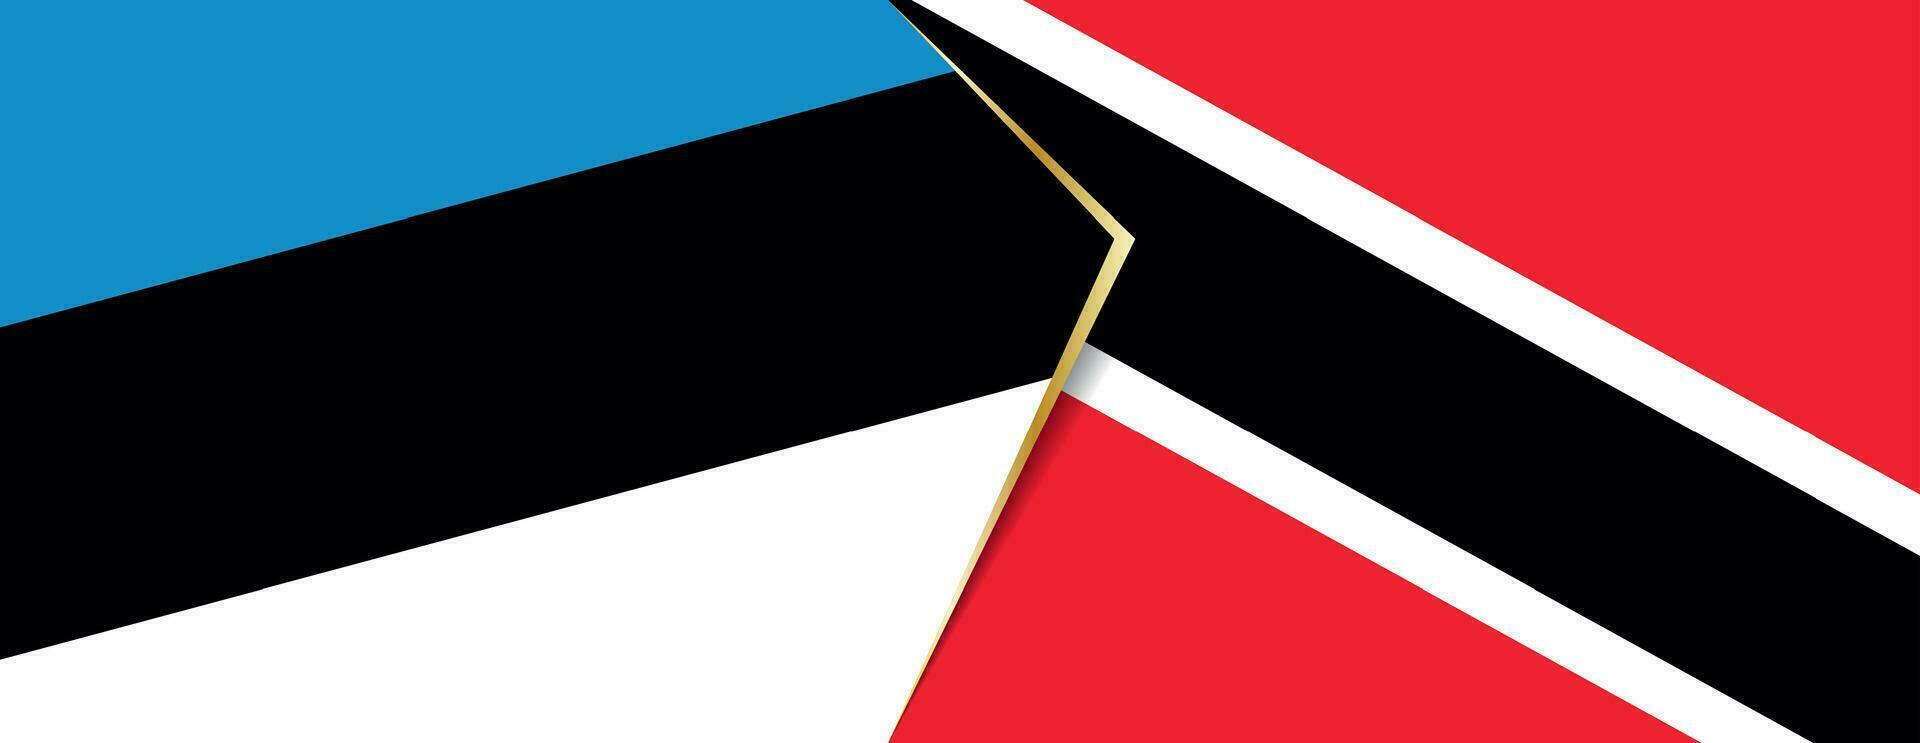 Estonia y trinidad y tobago banderas, dos vector banderas